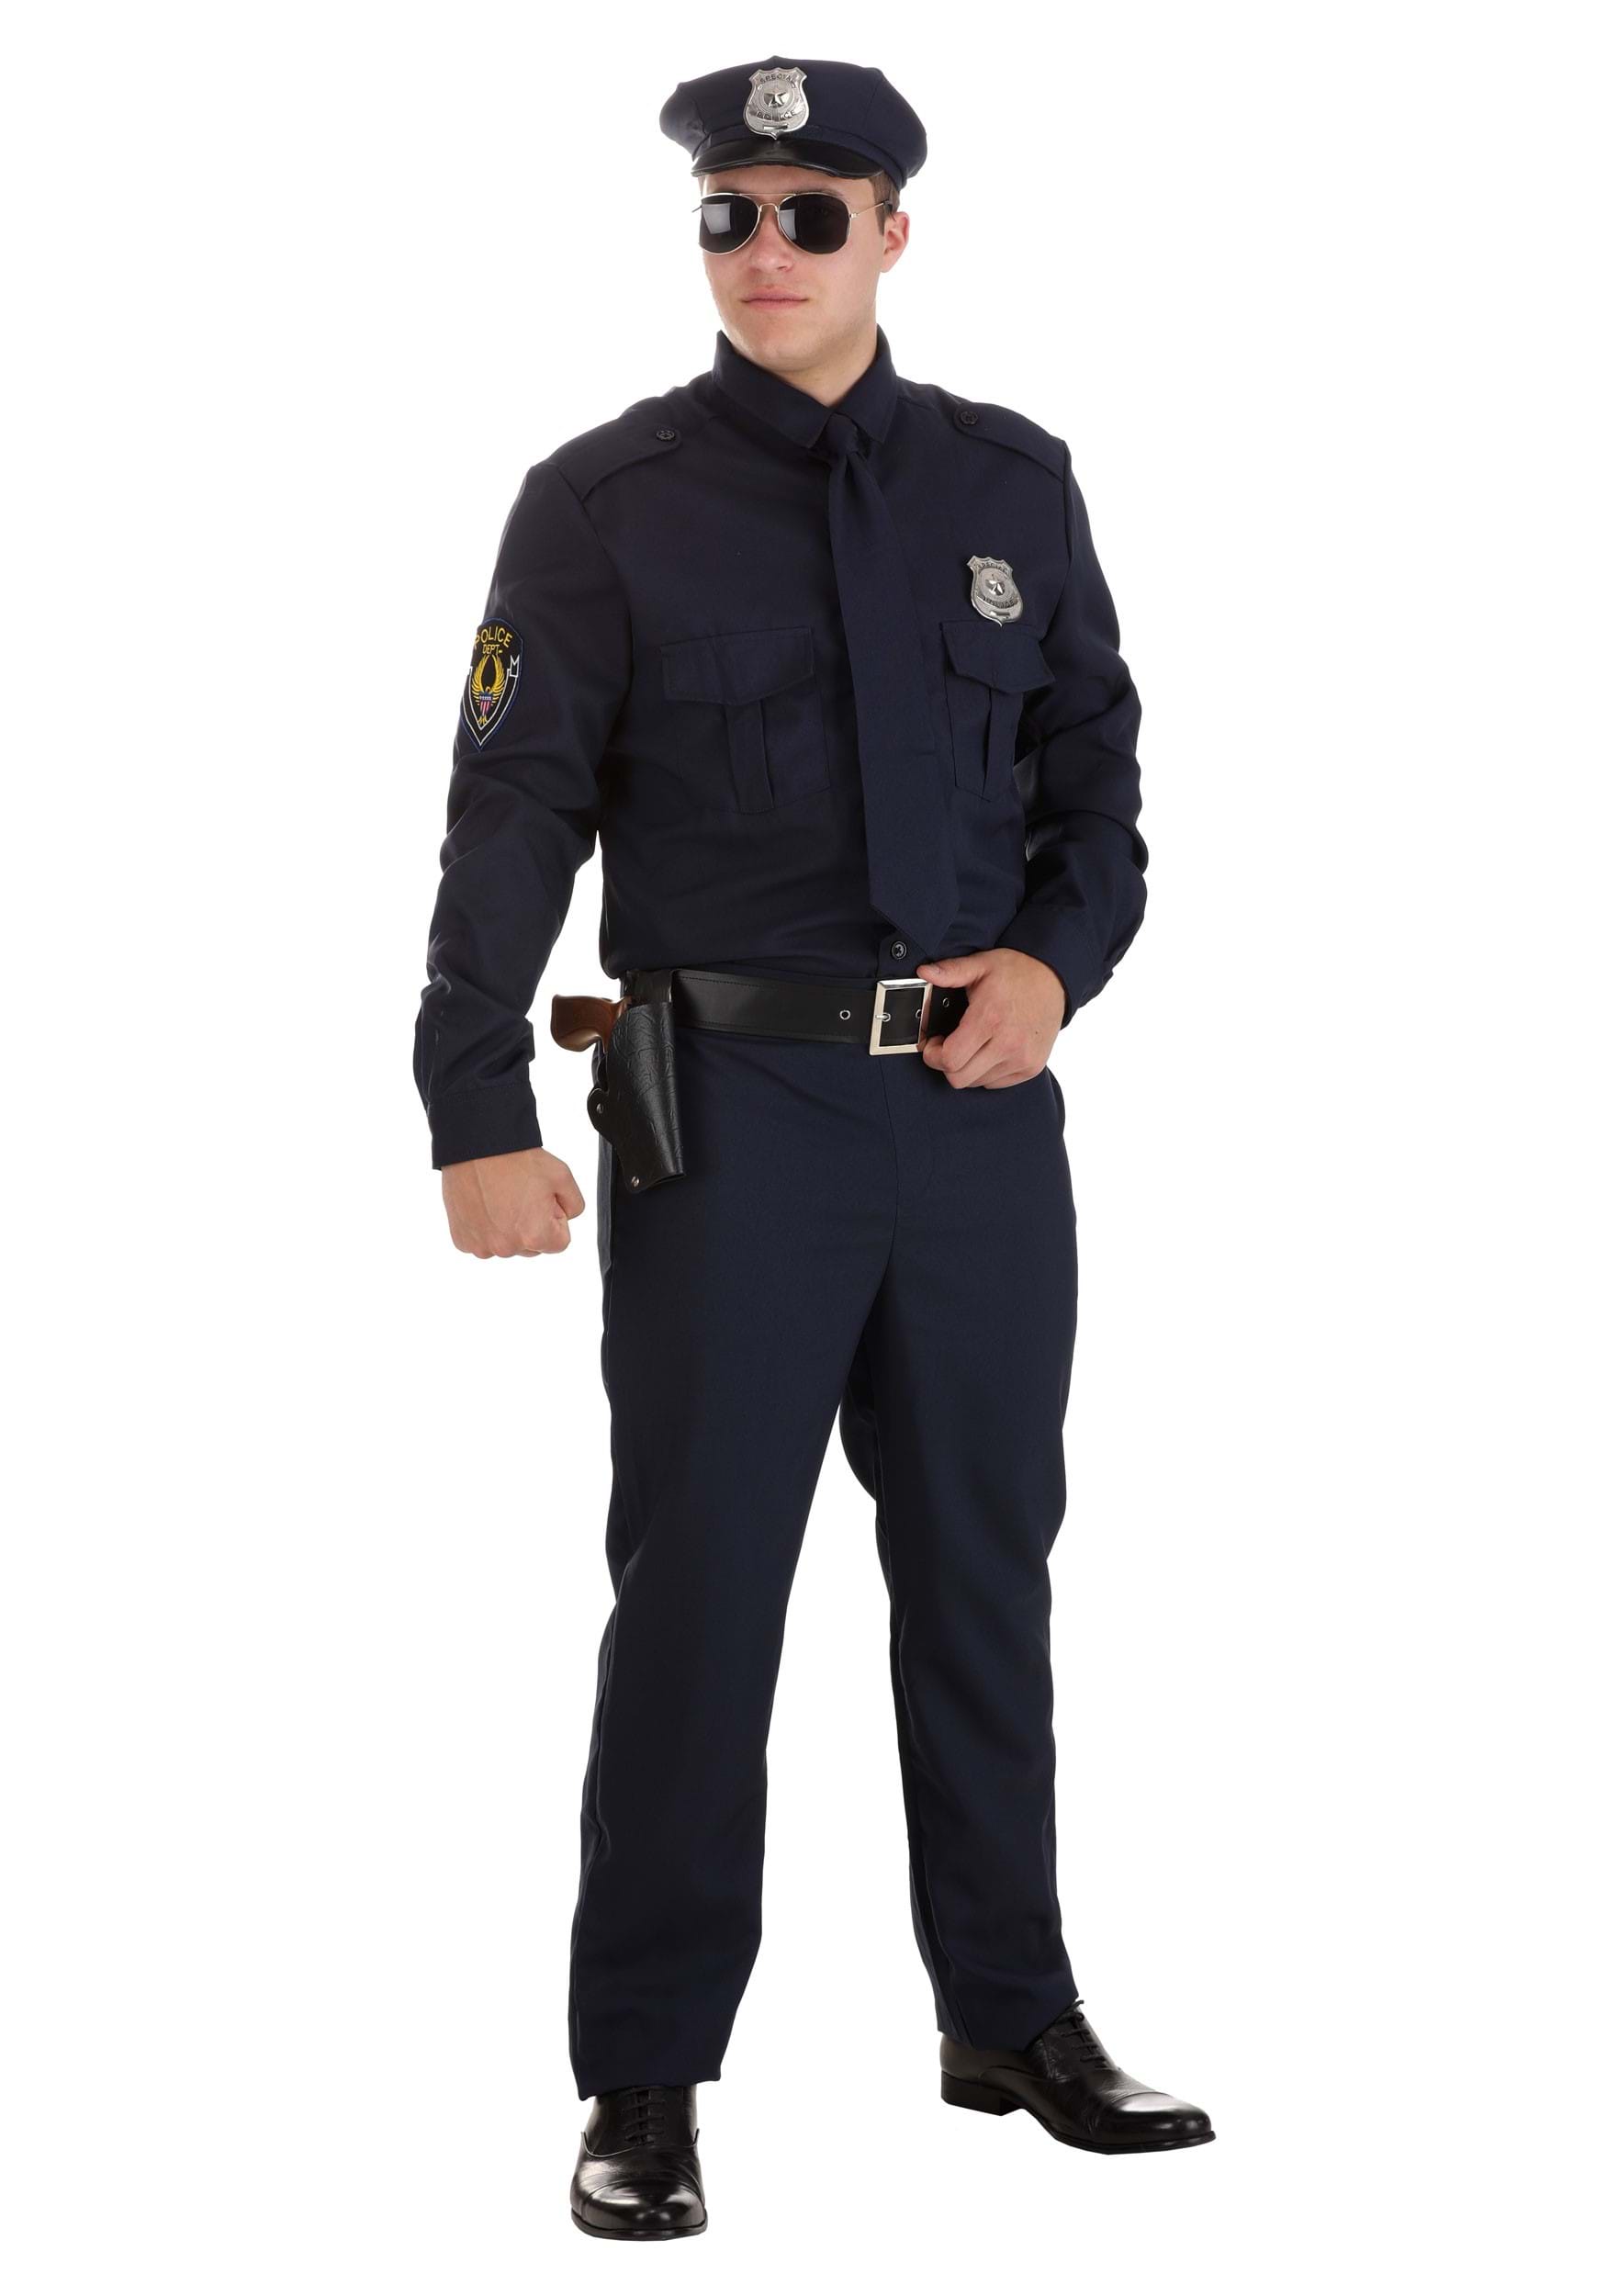 Men's Cop Costume | Adult Halloween Police Costume